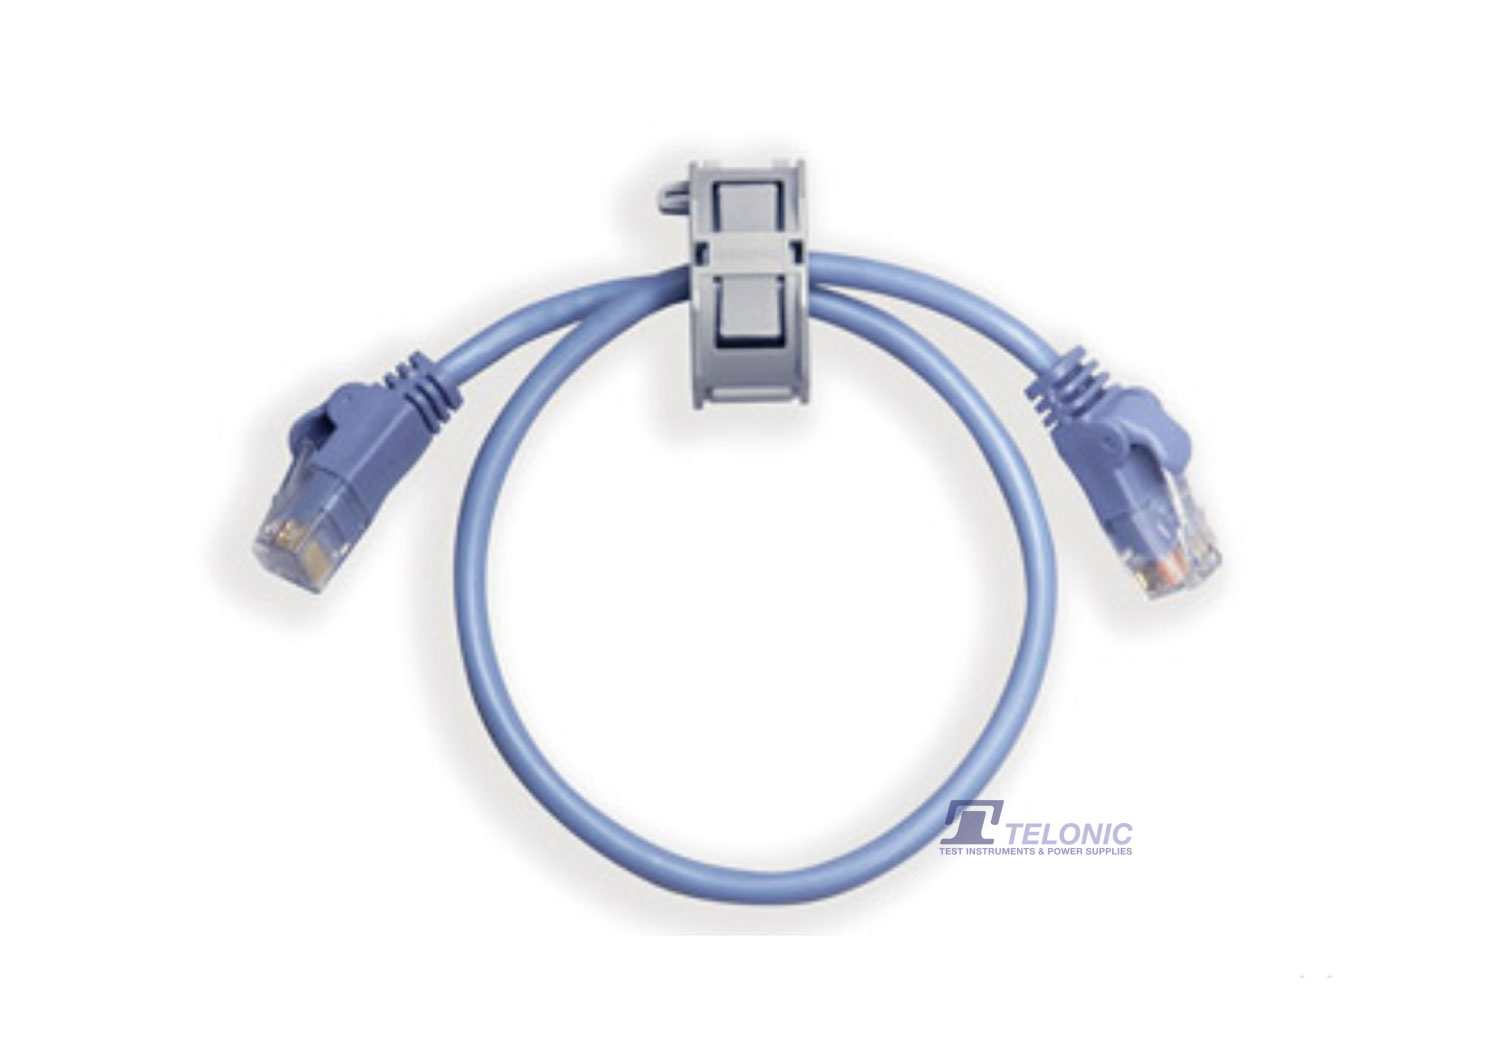 Kikusui PC01-PLZ-5W Parallel Operation Cable for PLZ-5W